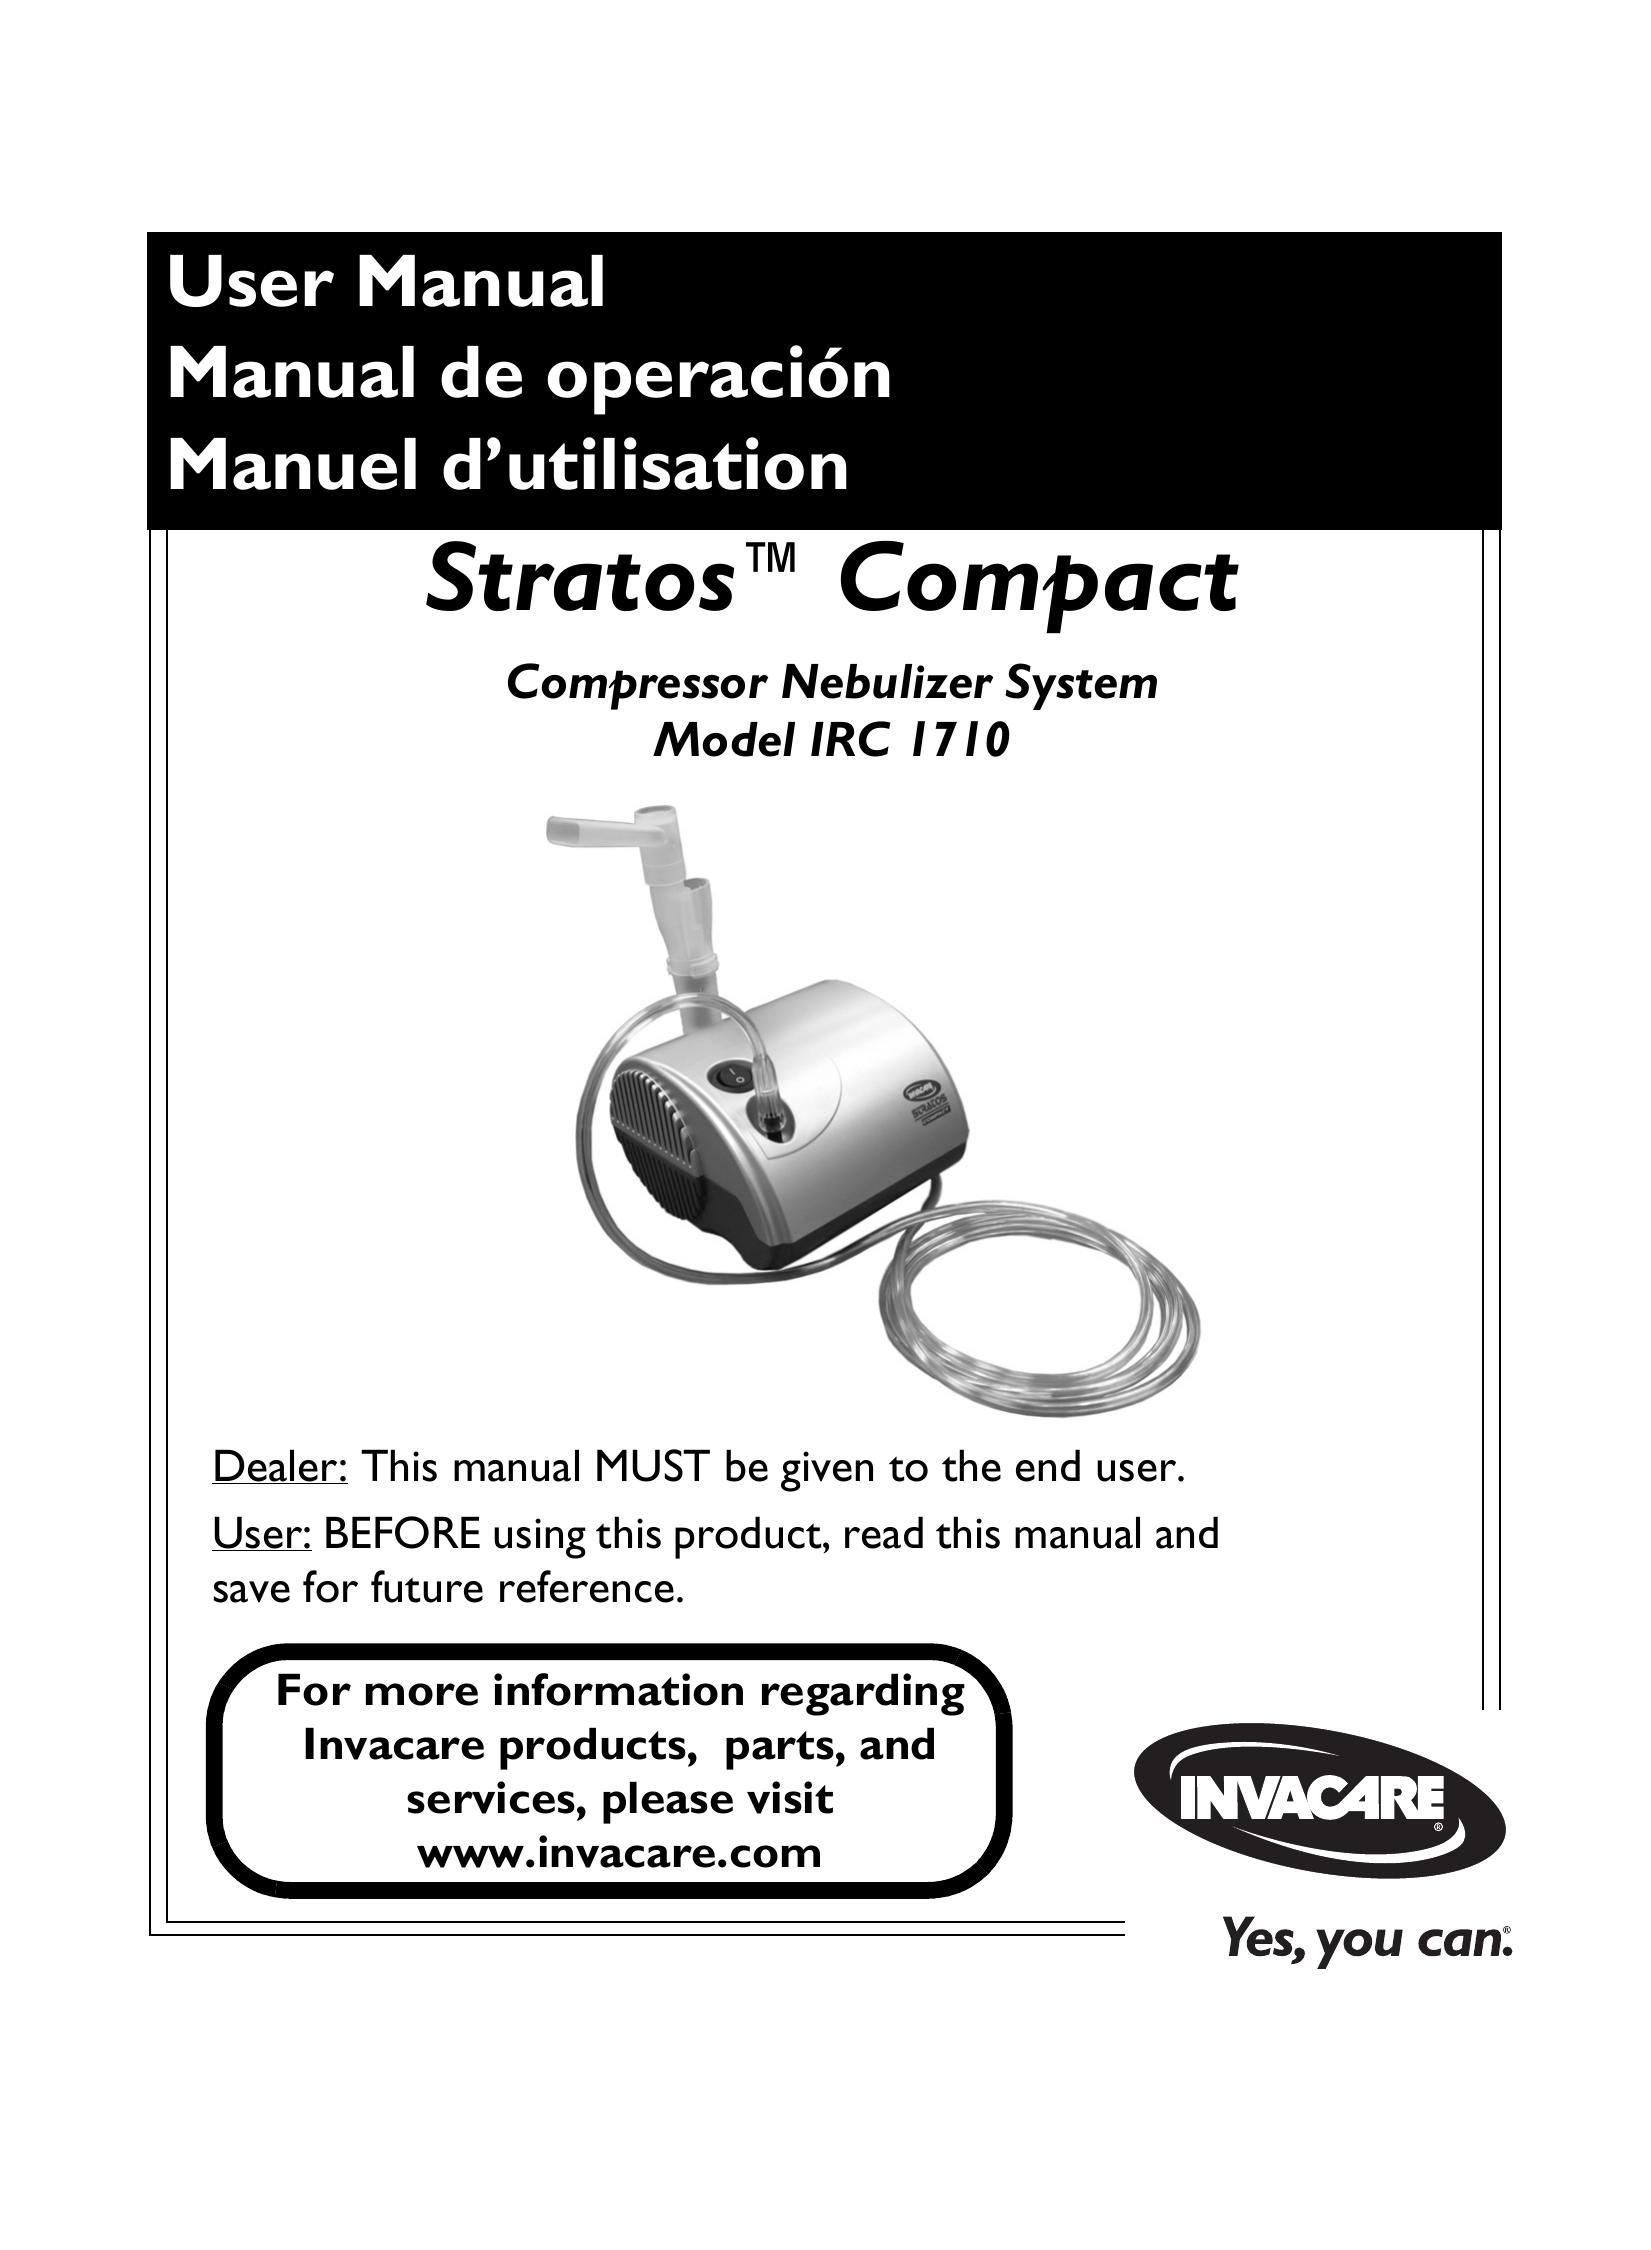 Invacare IRC 1710 Nebulizer User Manual